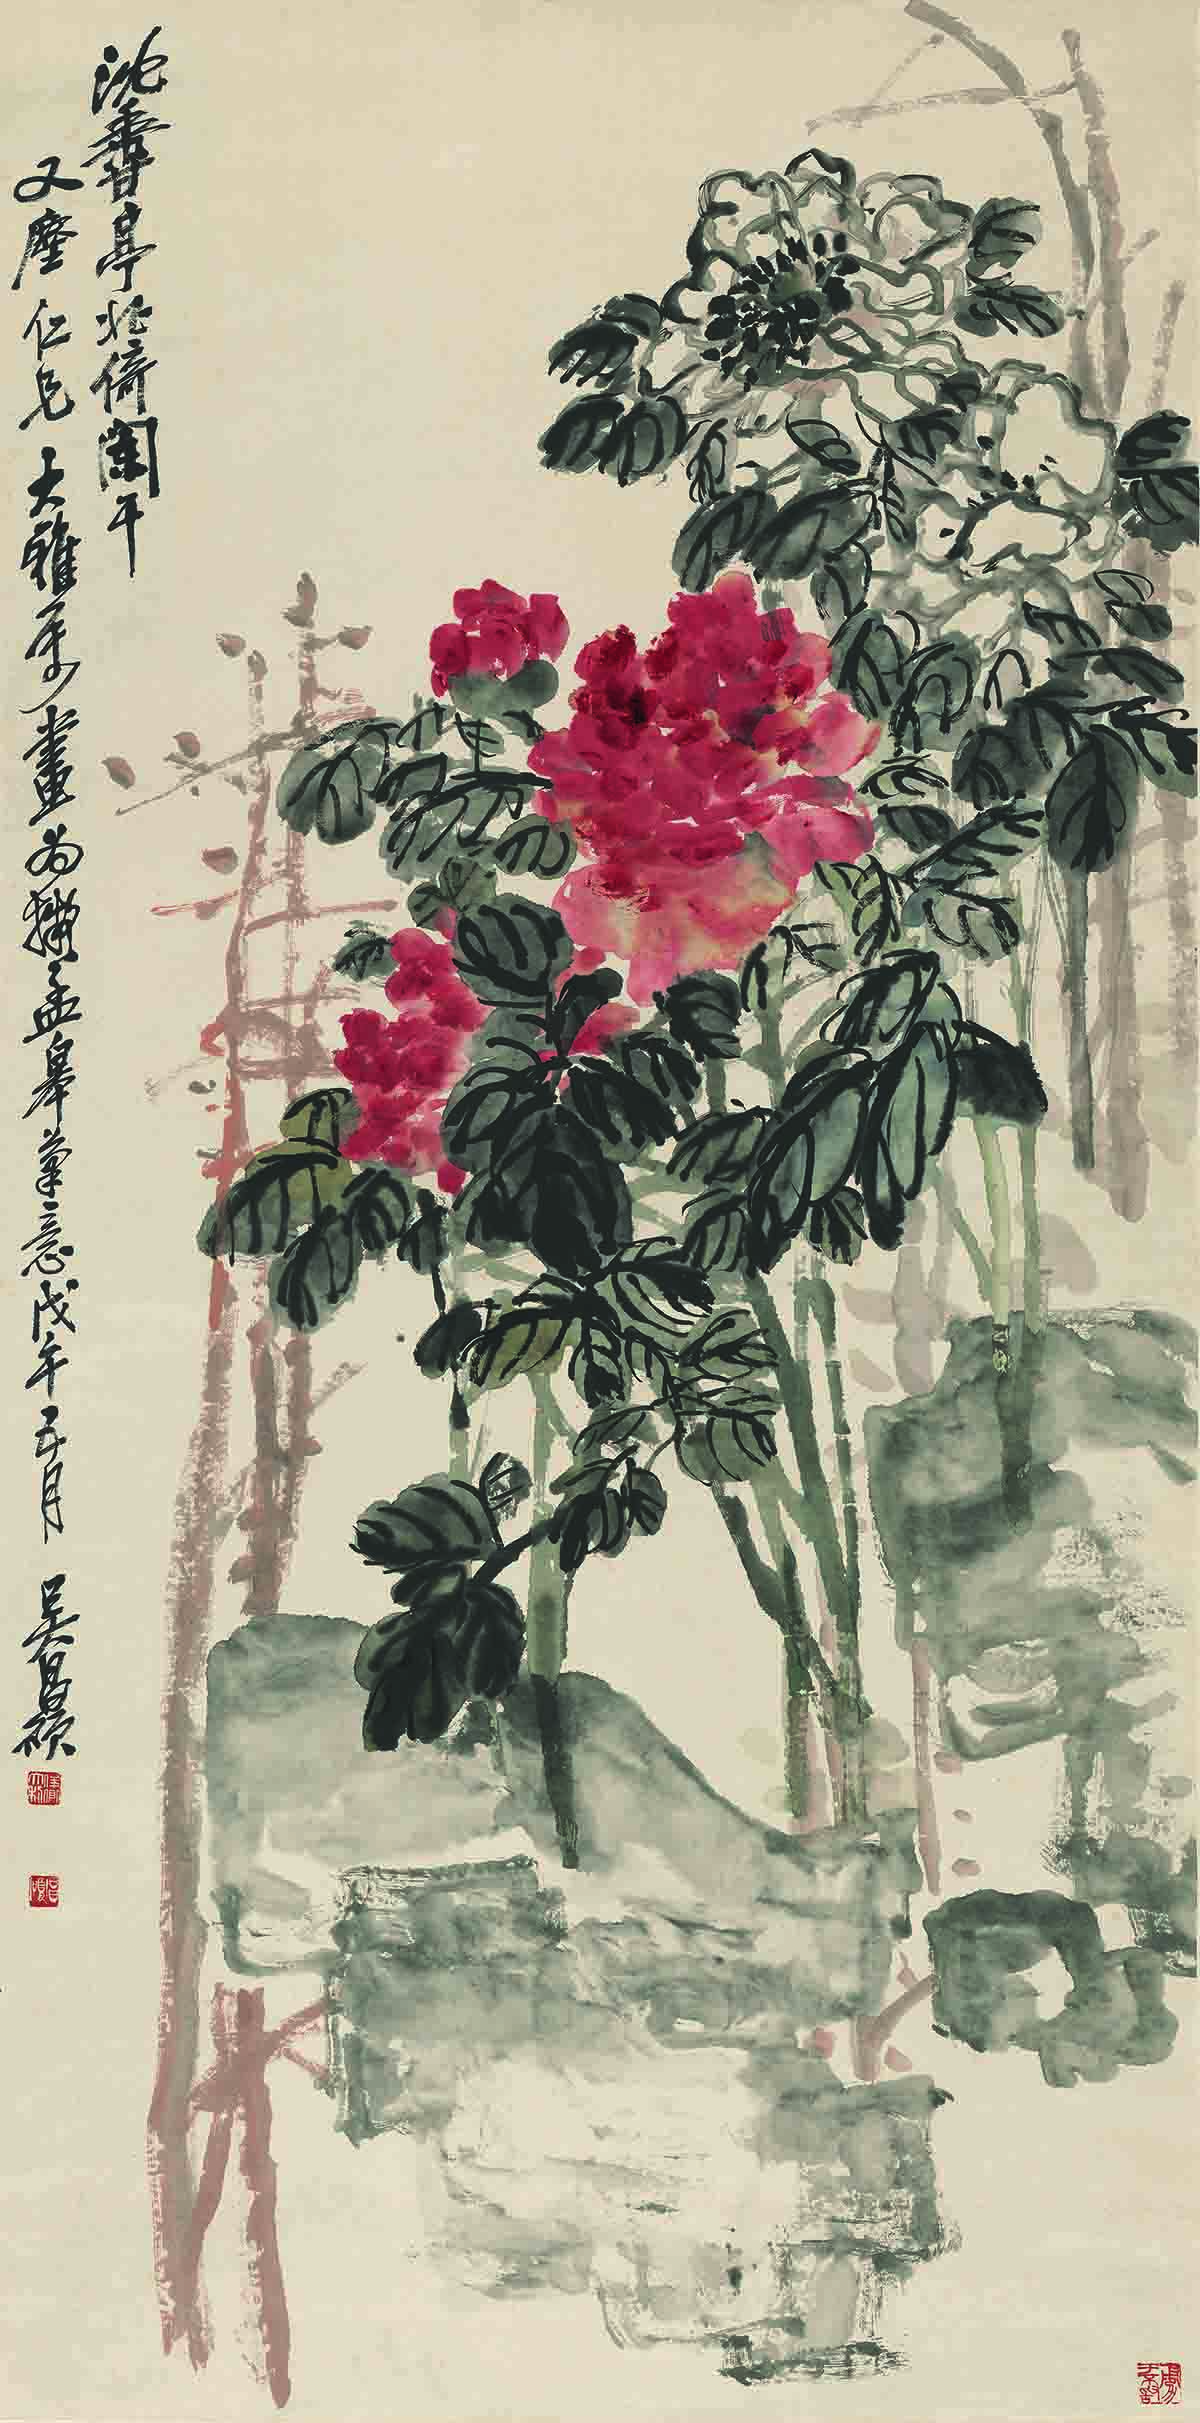 17吴昌硕-沈香亭牡丹图 纸本67.2x135.8